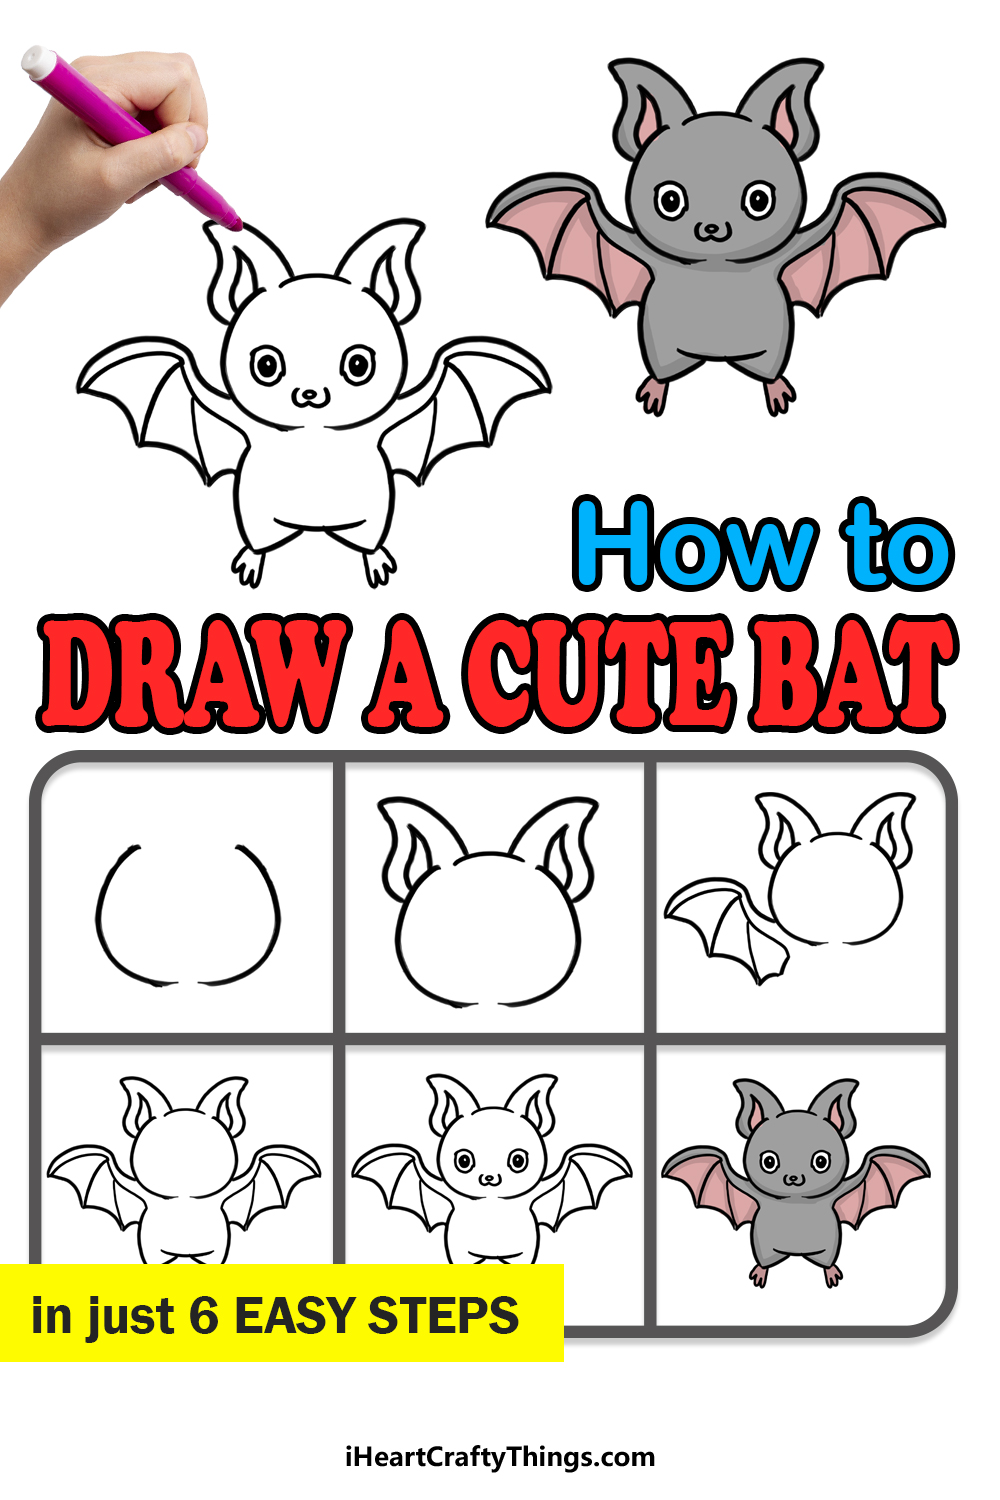 Como desenhar um guia passo a passo bonito de um morcego